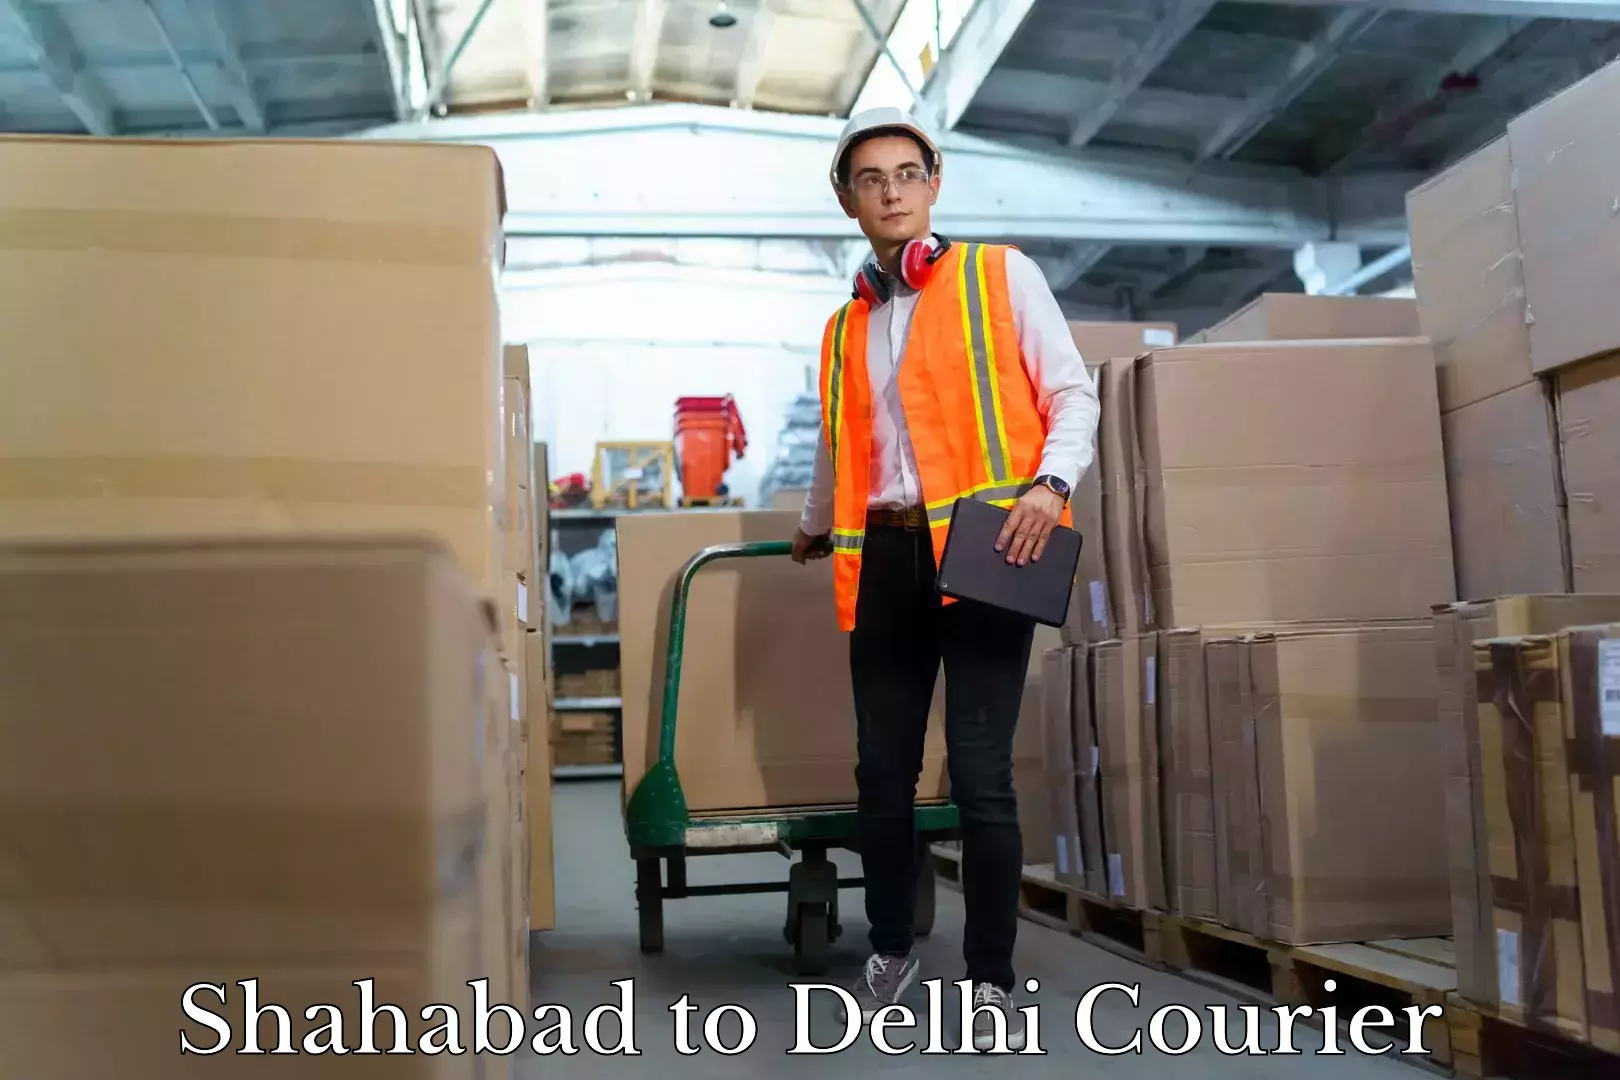 Quality moving company Shahabad to Delhi